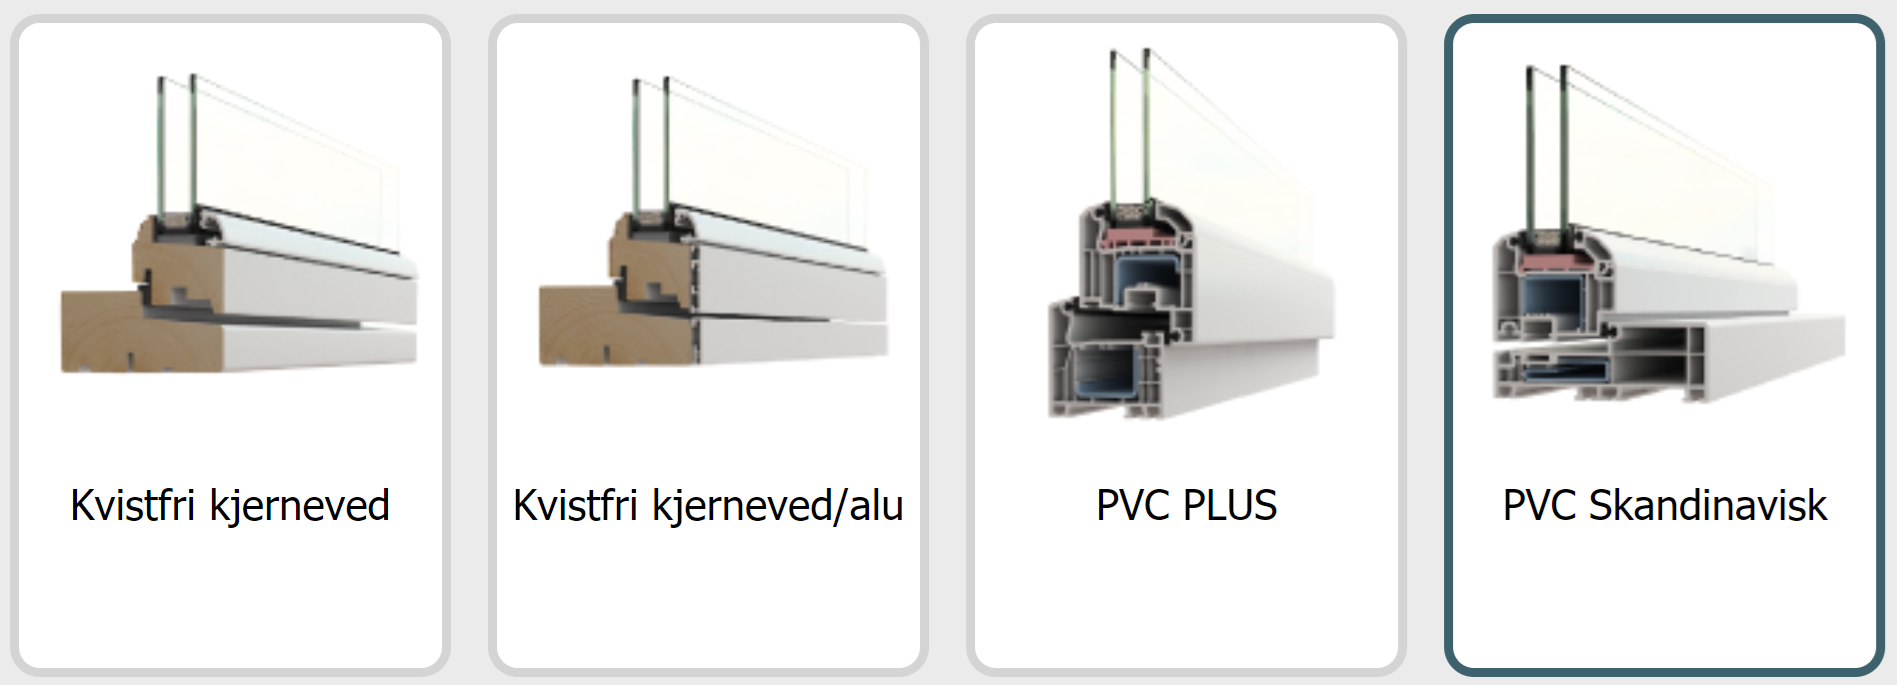 PVC Plus & PVC Skadinavisk - kva blir forskjellen? - Skjermbilde.PNG - oblygre